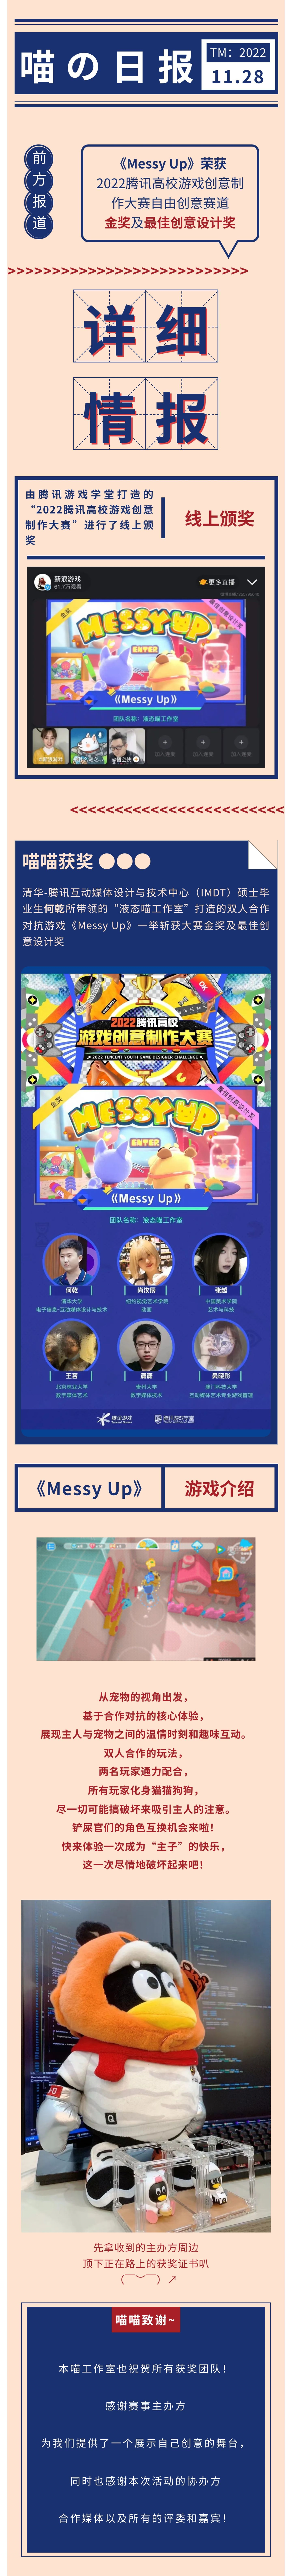 《Messy Up》斩获金奖及最佳创意设计奖丨 独游开发日志-第0张